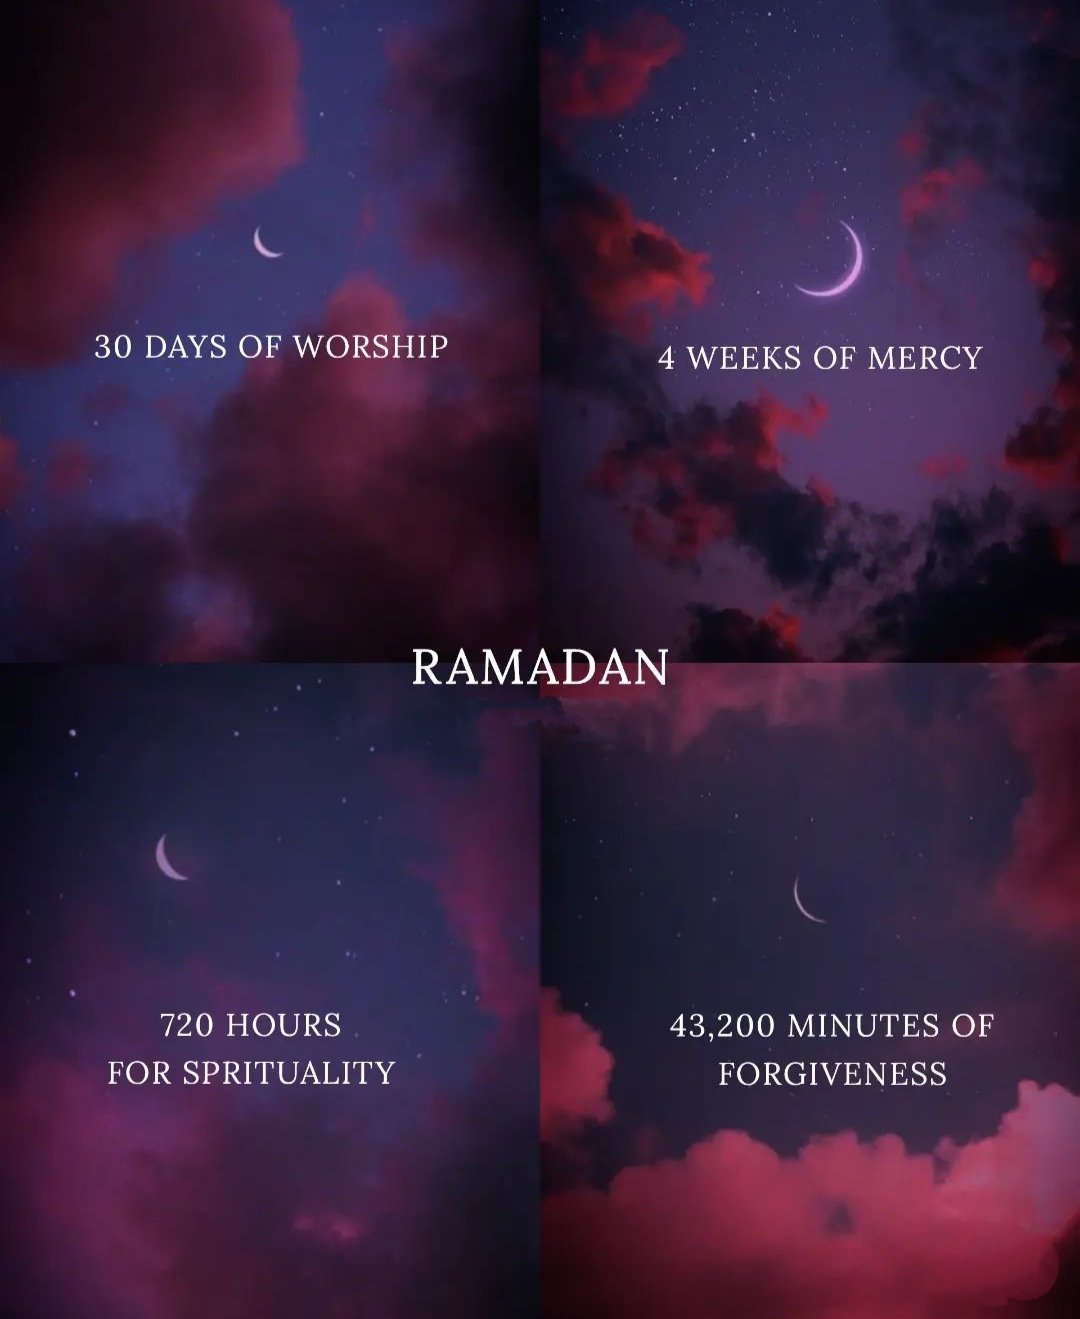 Ramadan: Chào mừng tháng Ramadan với những bức ảnh đẹp lung linh. Hãy đón xem để cảm nhận chiều sáng trong trang trọng và yên bình của tháng Ramadan.